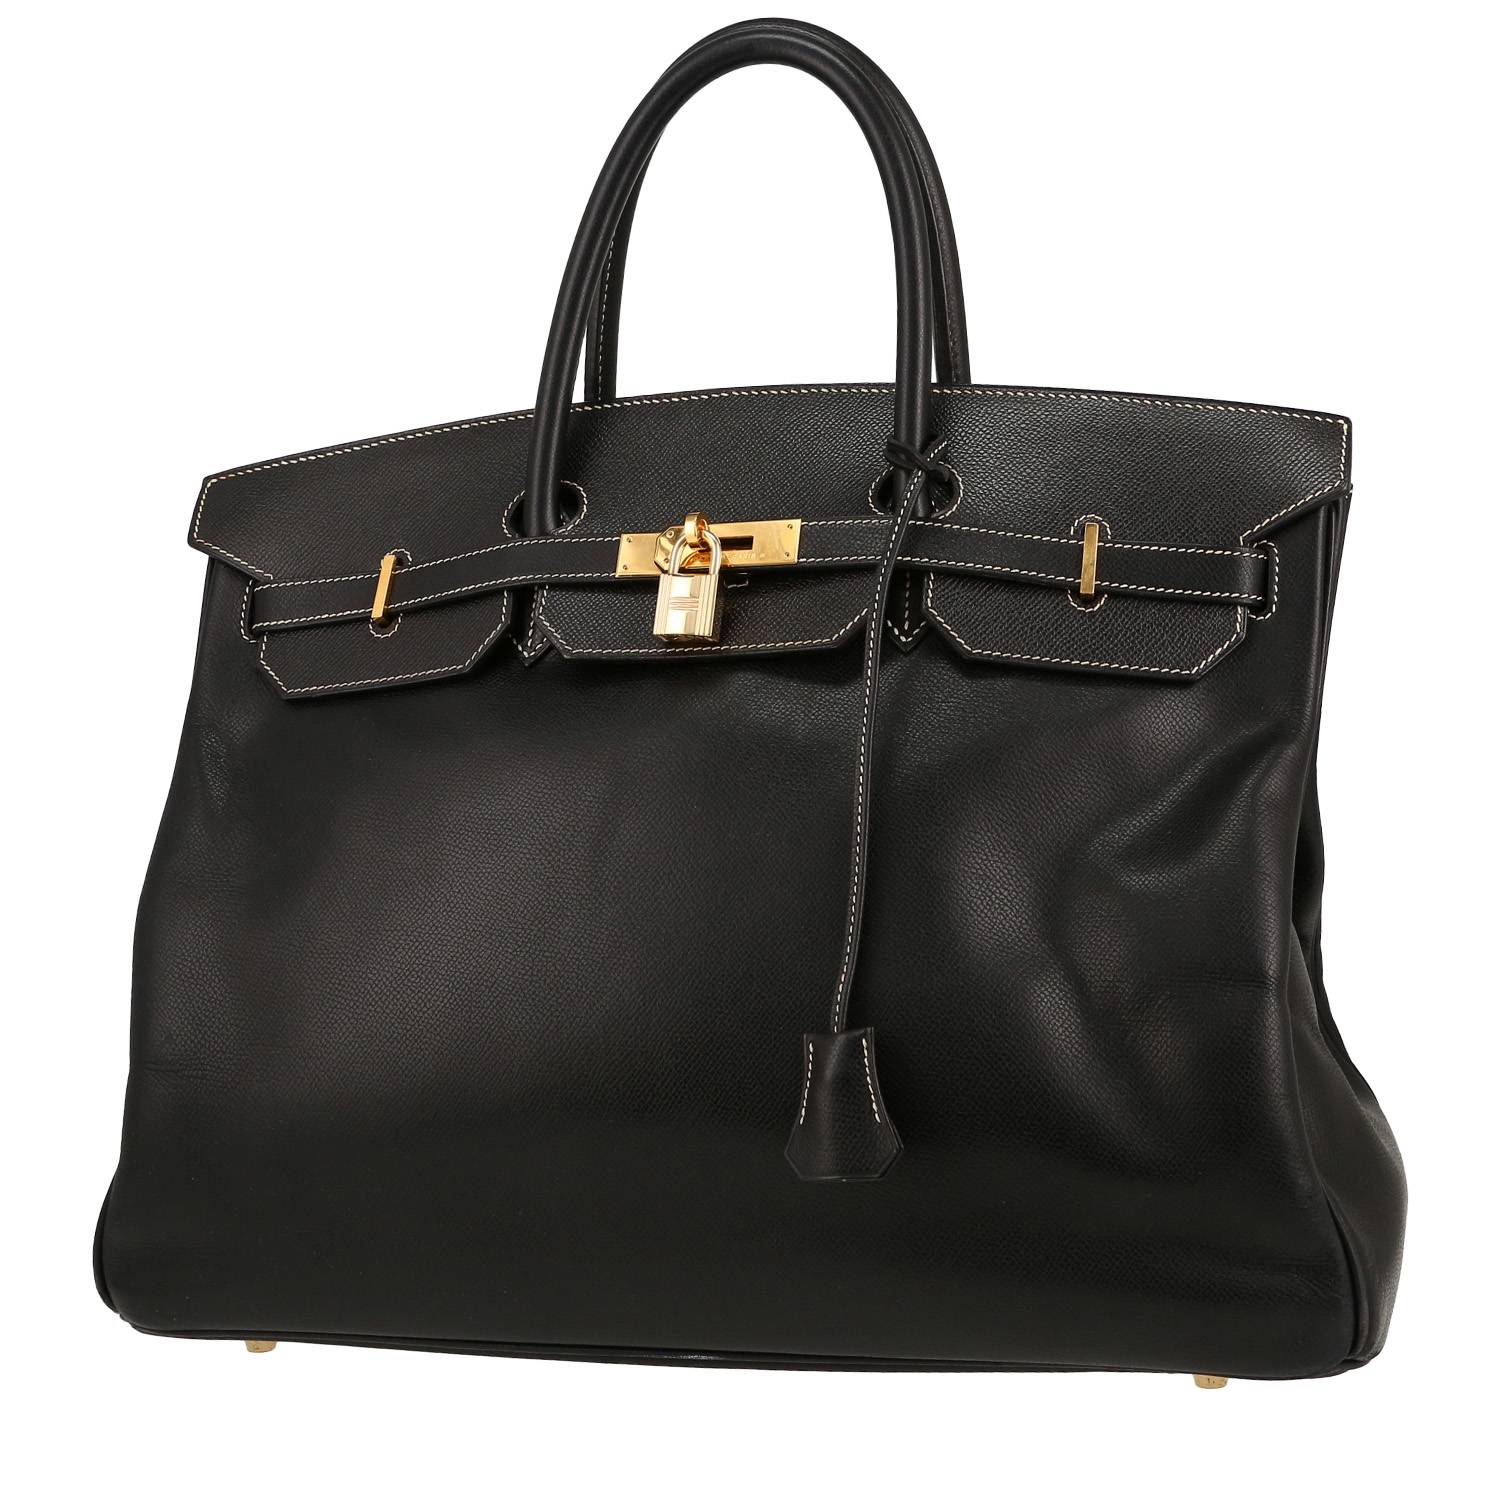 Birkin 40 cm Handbag In Black Courchevel Leather